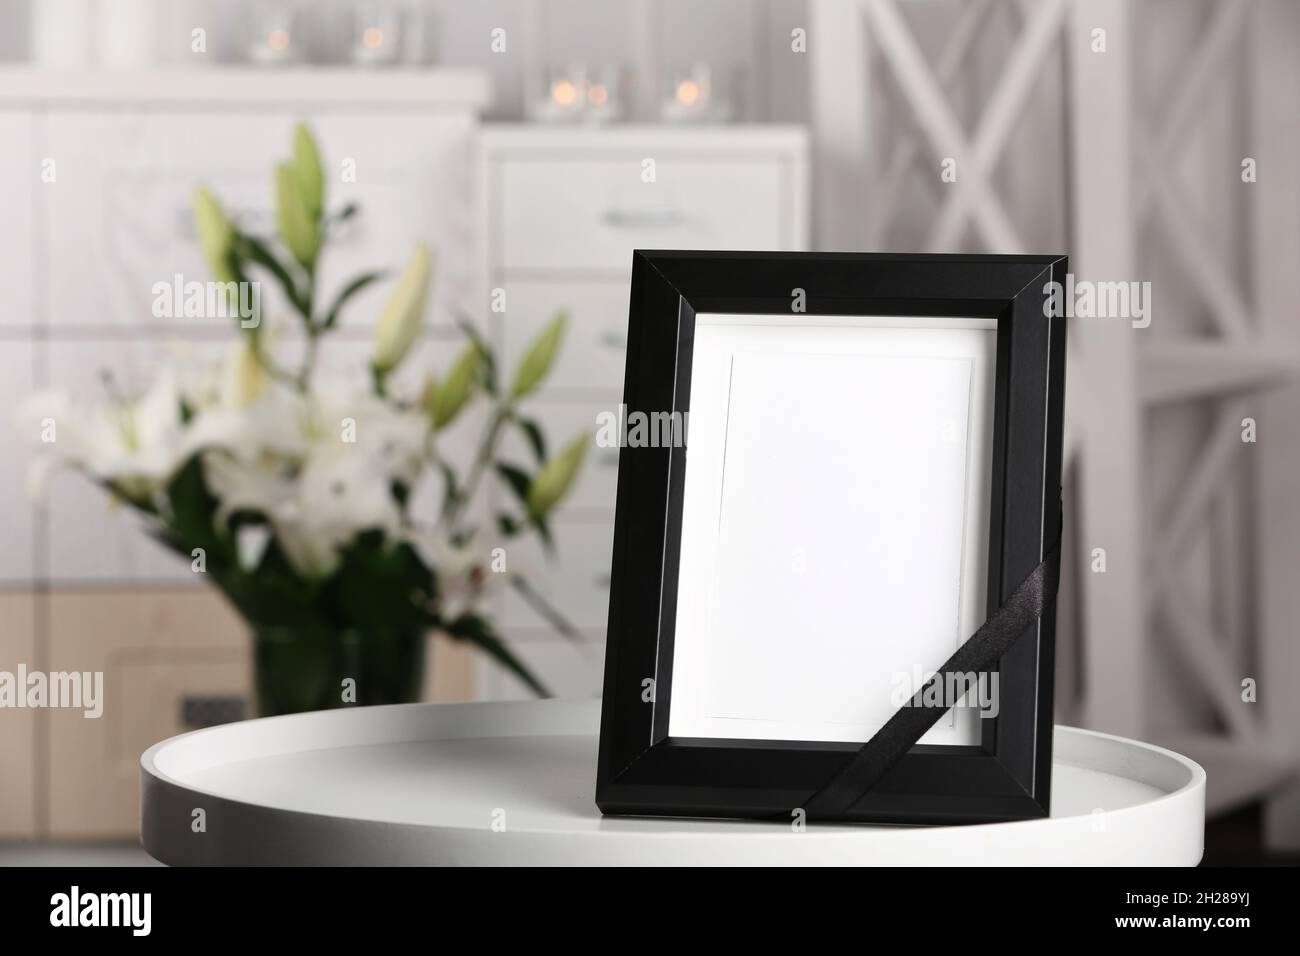 Beerdigung Bilderrahmen mit schwarzem Band auf Tisch, drinnen  Stockfotografie - Alamy